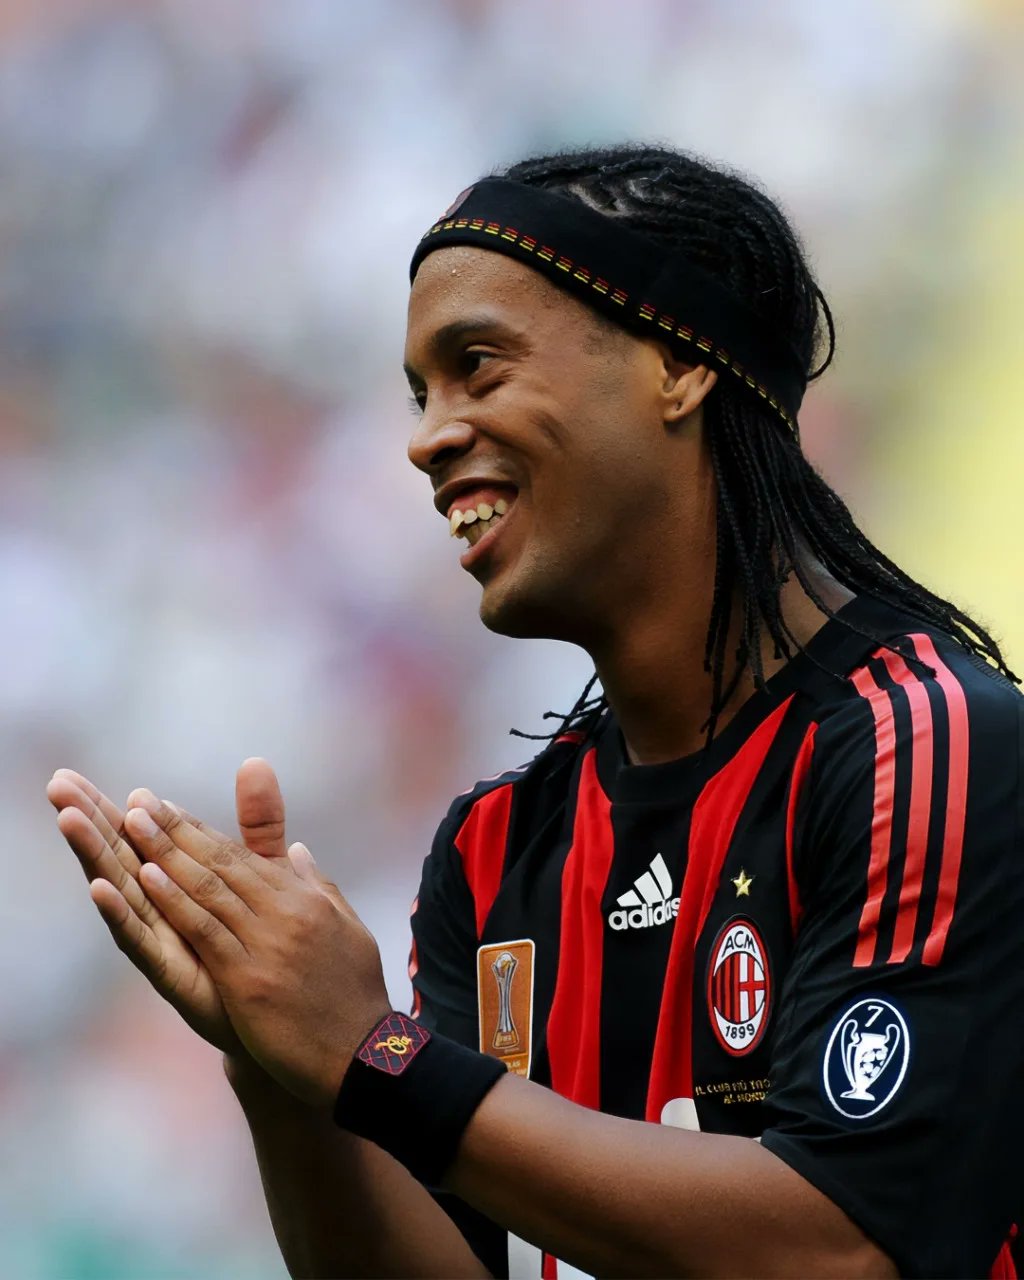 Internautas revelam decepção com comportamento de Ronaldinho em